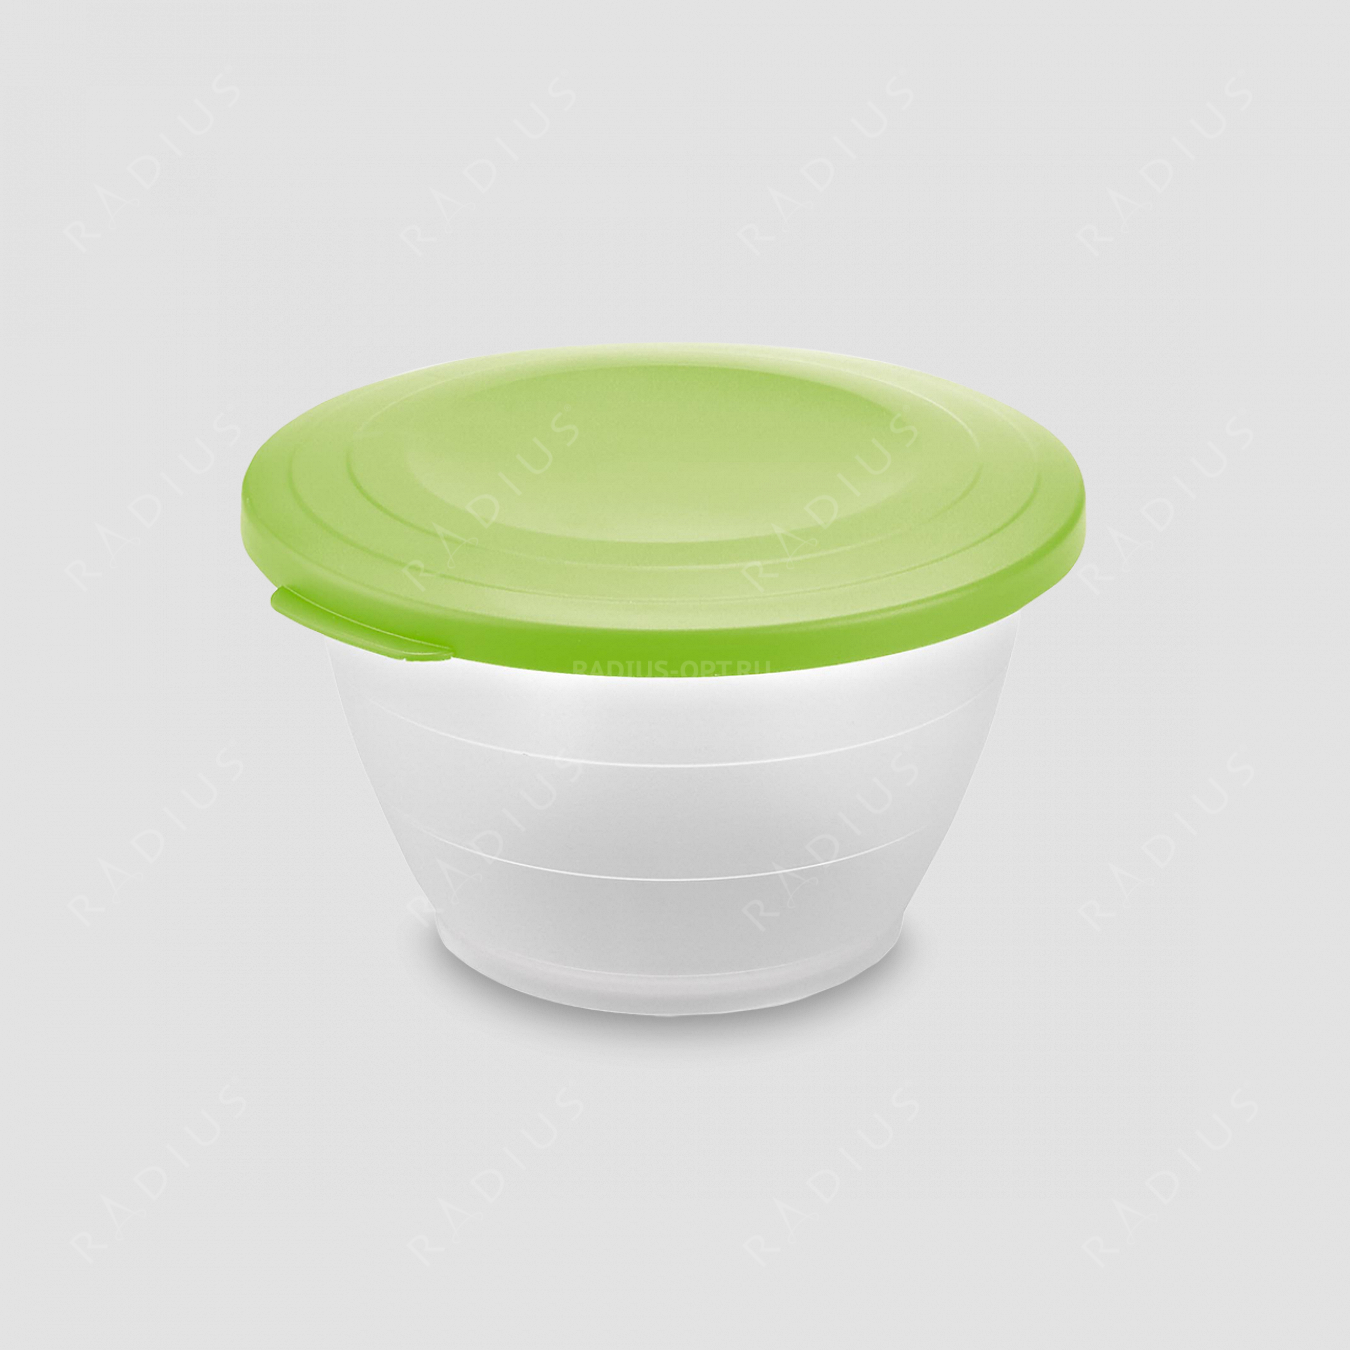 Емкость для салата с крышкой, объем 1,3 л, диаметр 18 см, цвет - зеленый, серия Plastic tools, Westmark, Германия